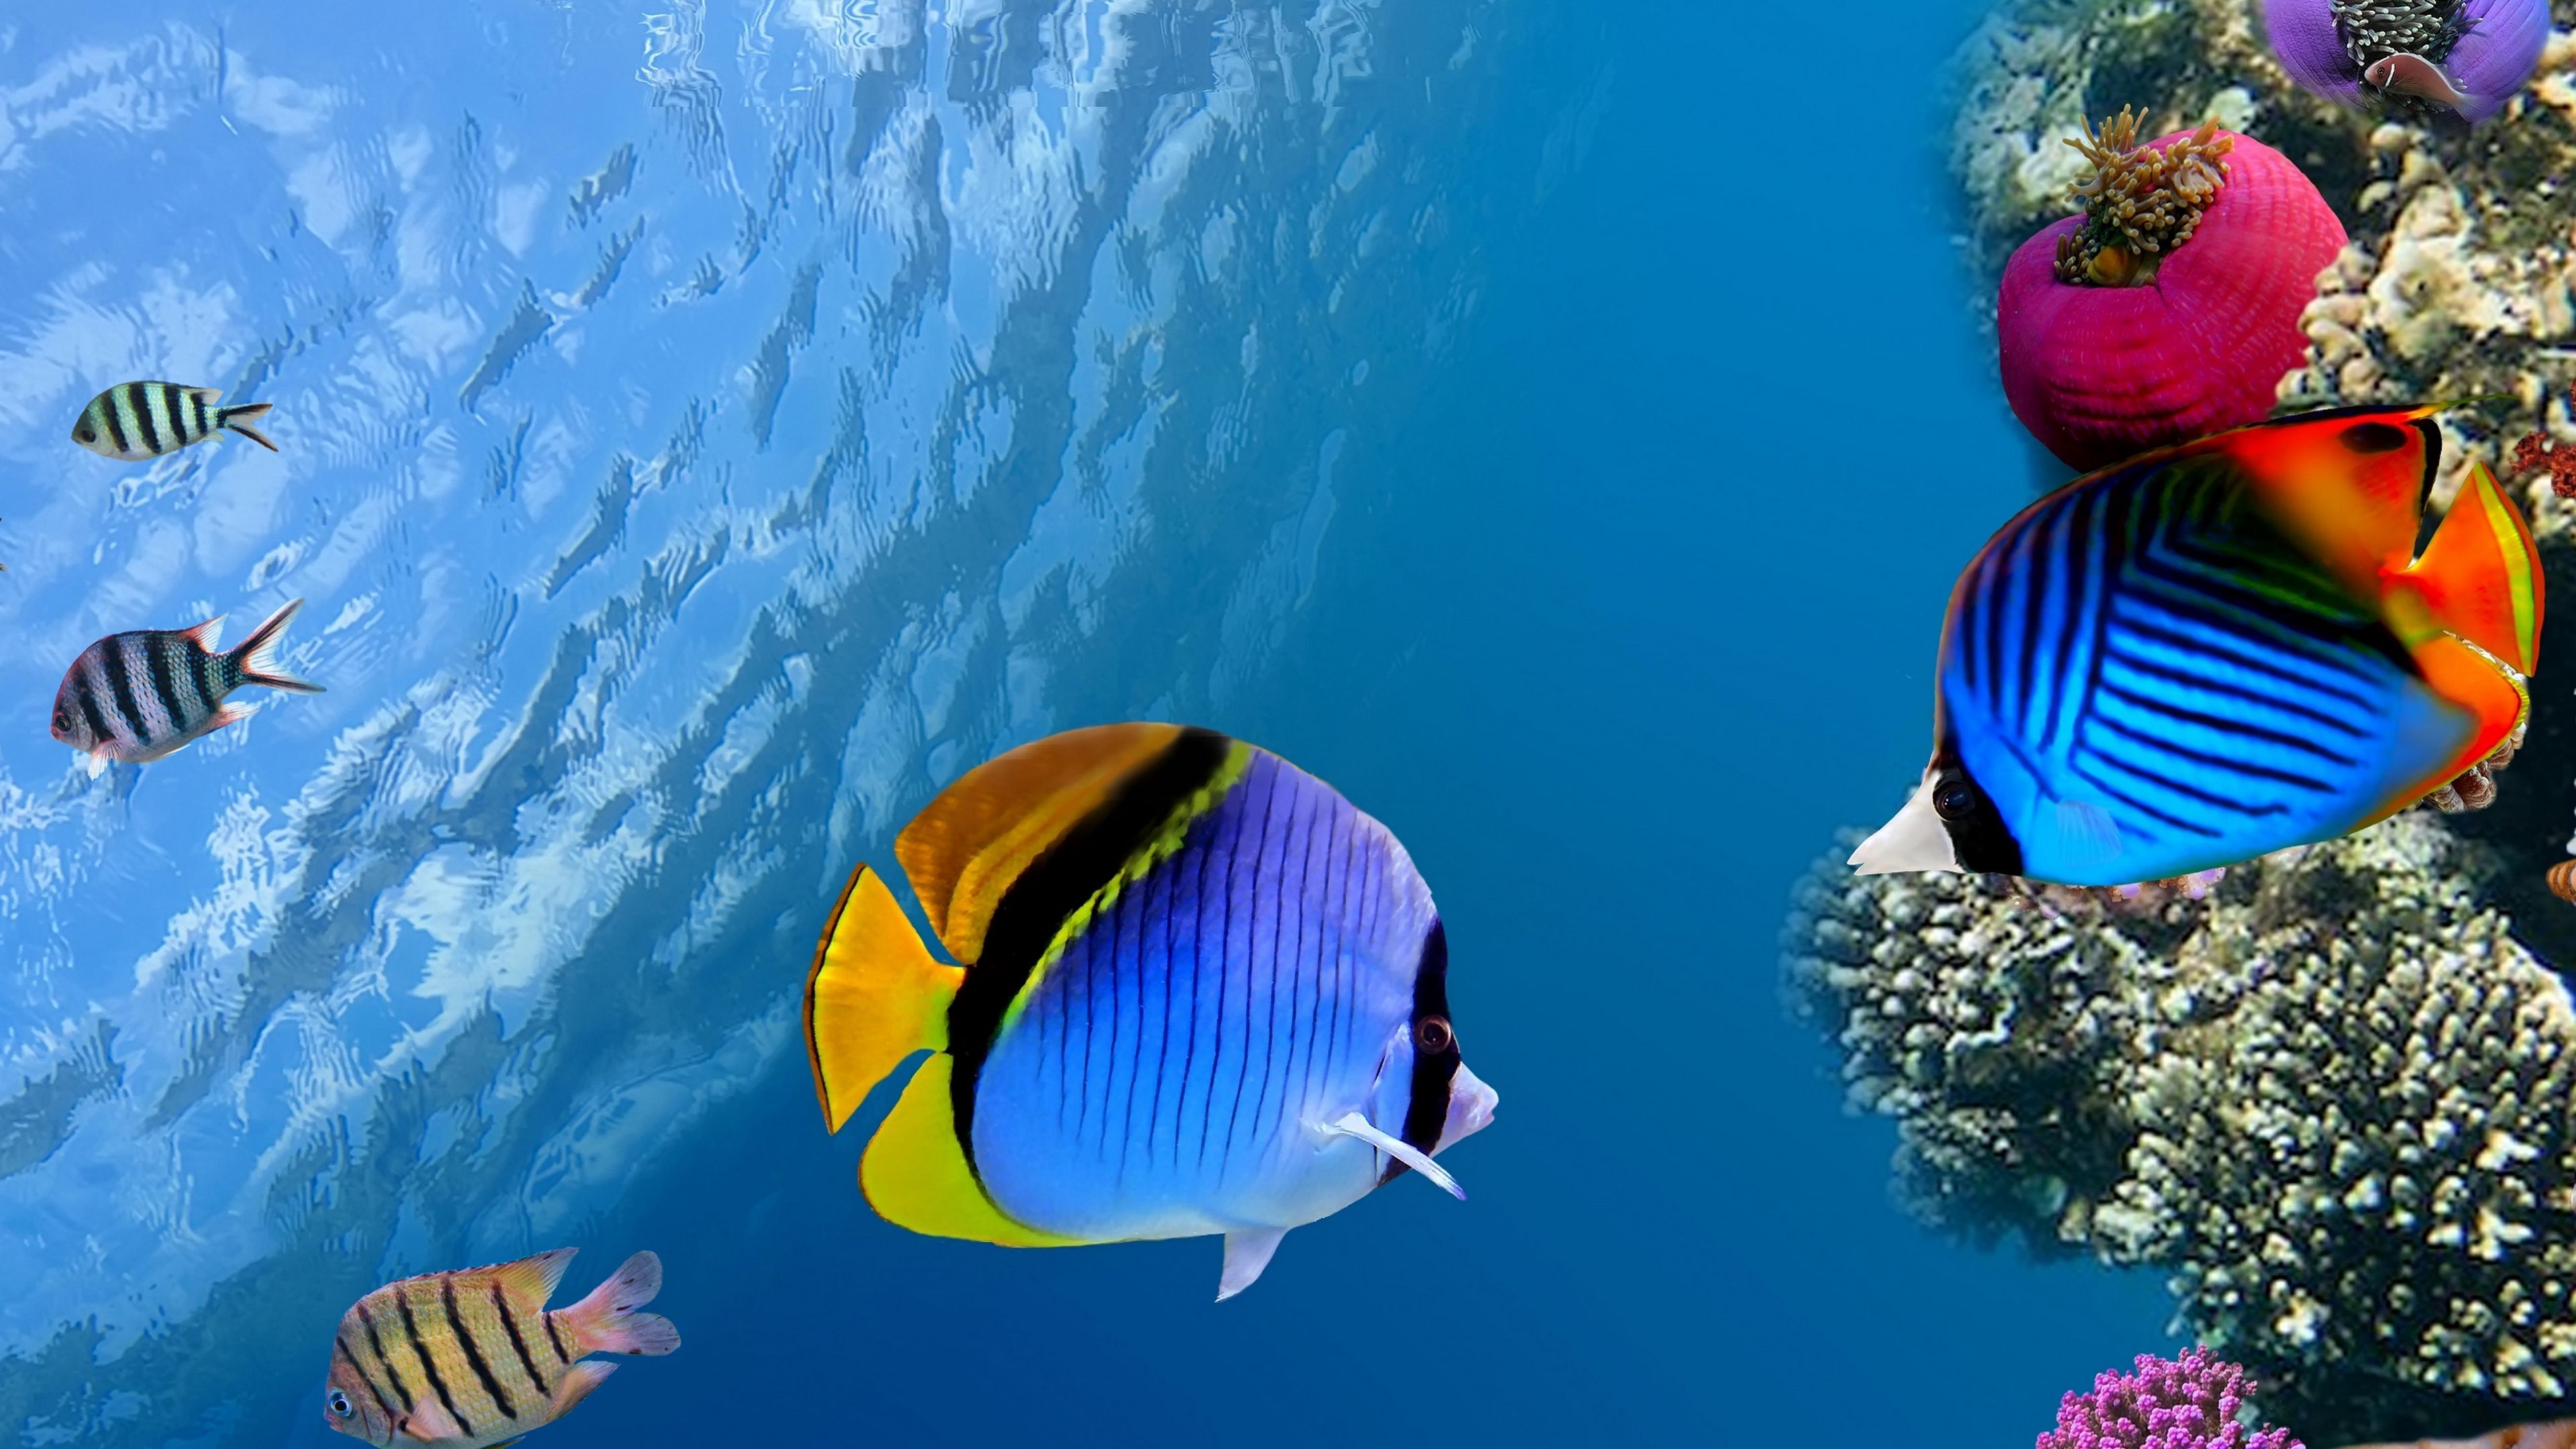 Đáy biển: khám phá thế giới ngầm đầy bí ẩn với những hình ảnh tuyệt đẹp của đáy biển. Tận hưởng trải nghiệm tuyệt vời của việc chiêm ngưỡng những cảnh vật đa dạng, giáo dục và gây cấn khi bạn đi sâu vào lòng đại dương.